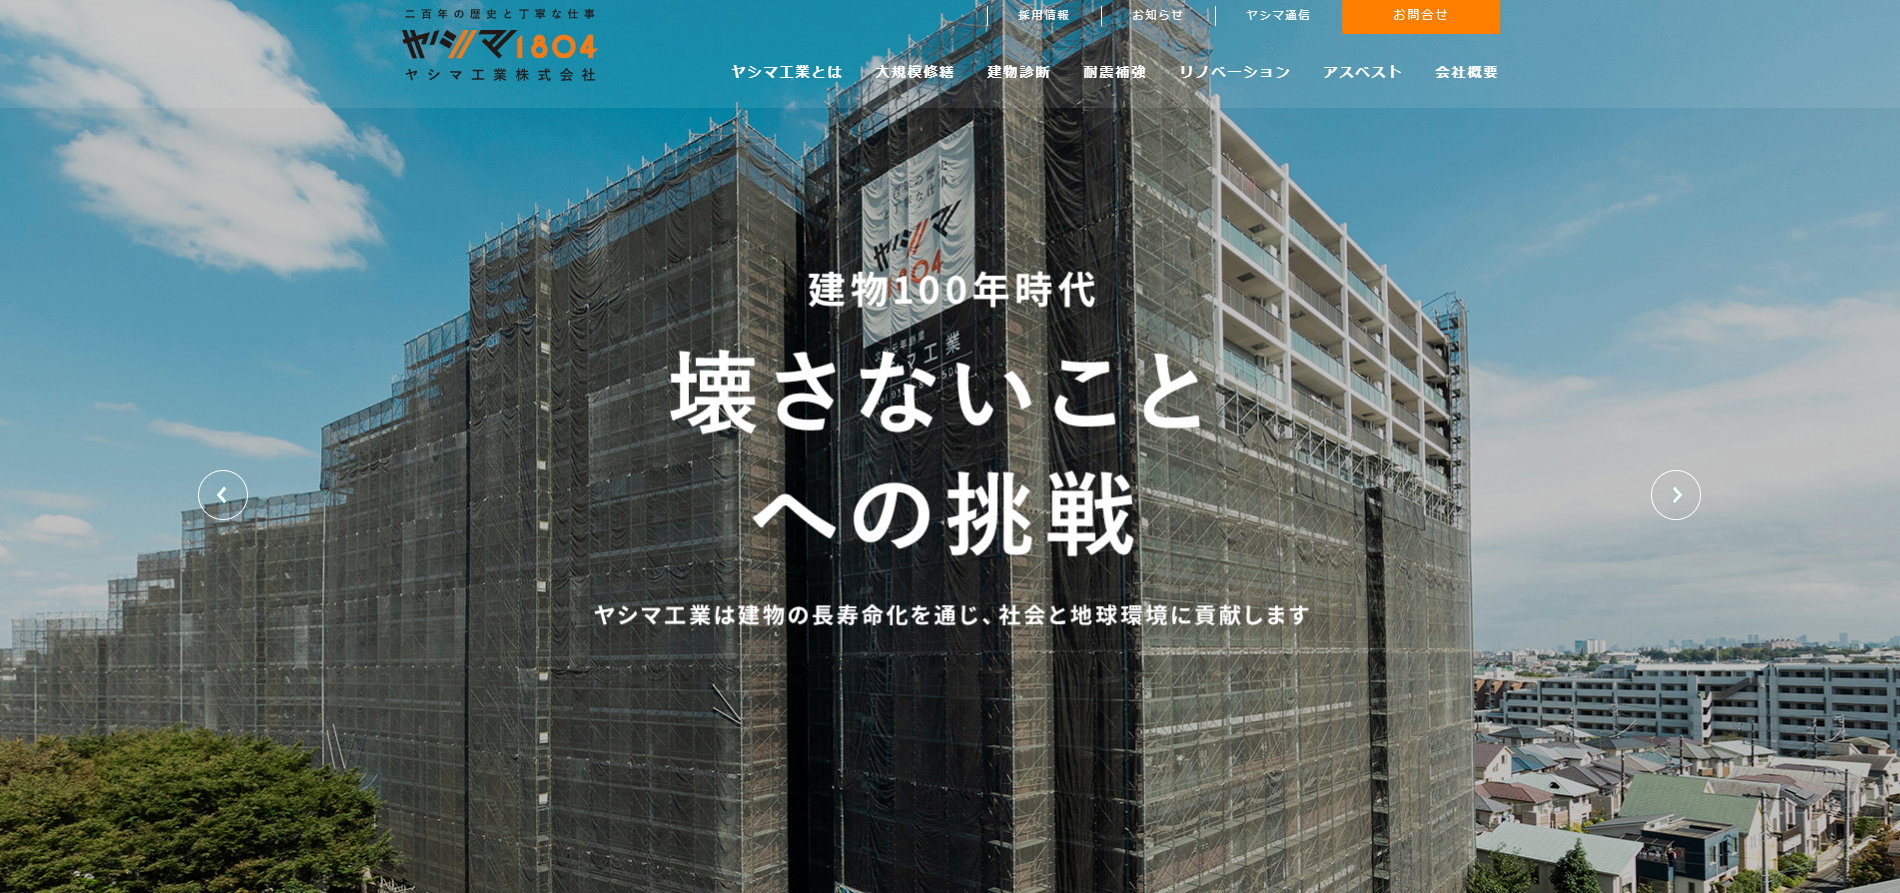 ヤシマ工業公式サイトのキャプチャ